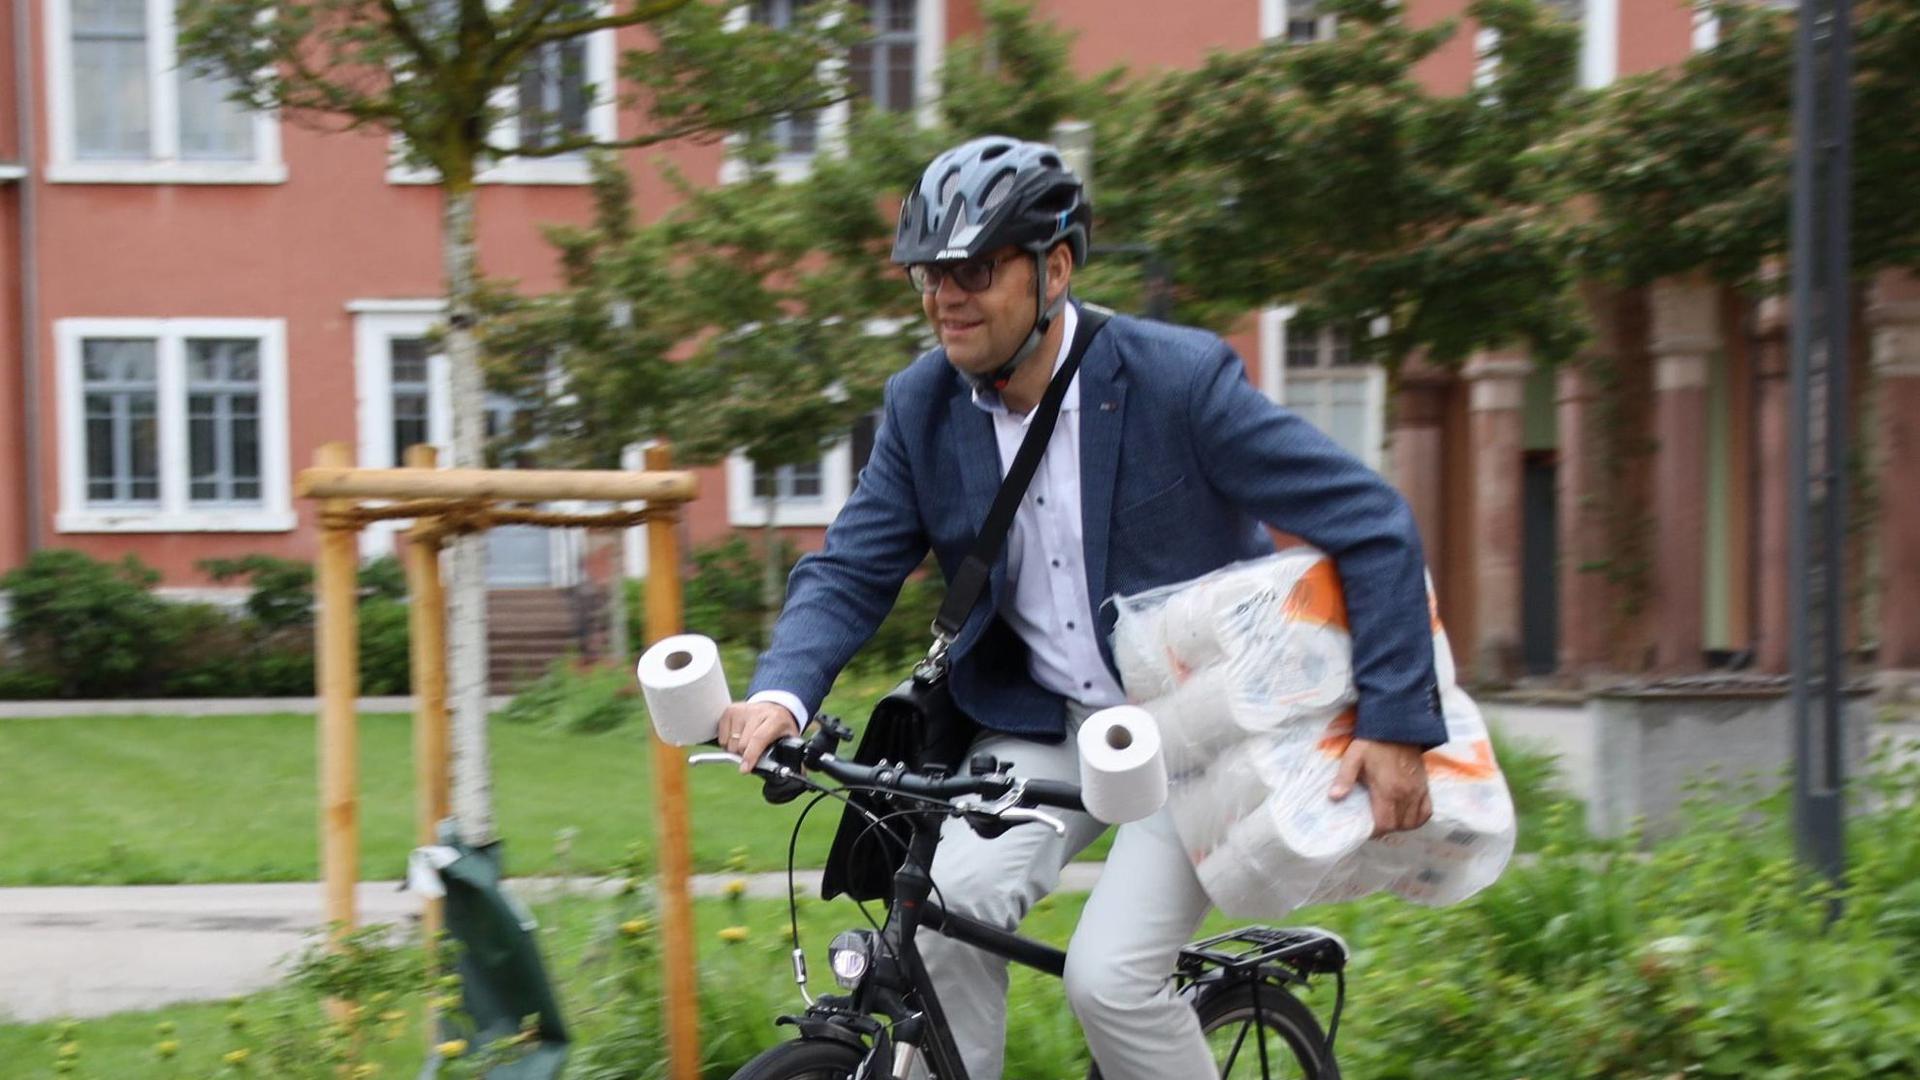 Alles im Griff: Auch auf dem Fahrrad meisterte Acherns Oberbürgermeister Klaus Muttach die Klopapier-Challenge. Bürgermeister Stefan Hattenbach aus Kappelrodeck hatte ihn dazu herausgefordert.